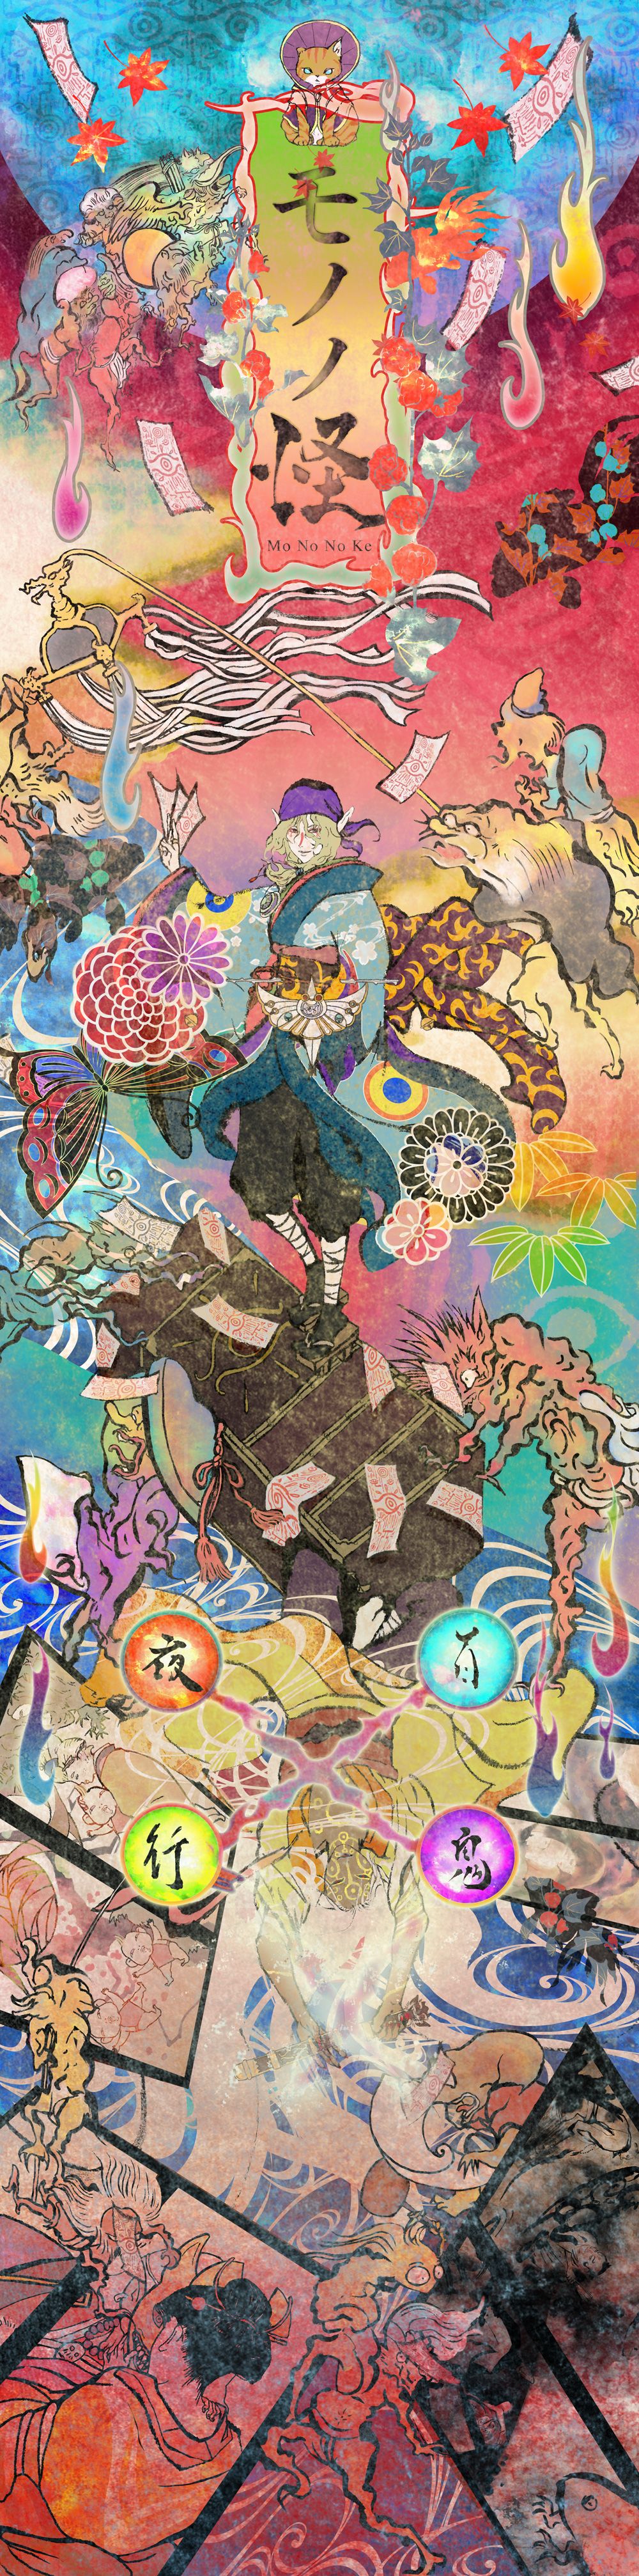 Mononoke Anime Art Wallpaper Image